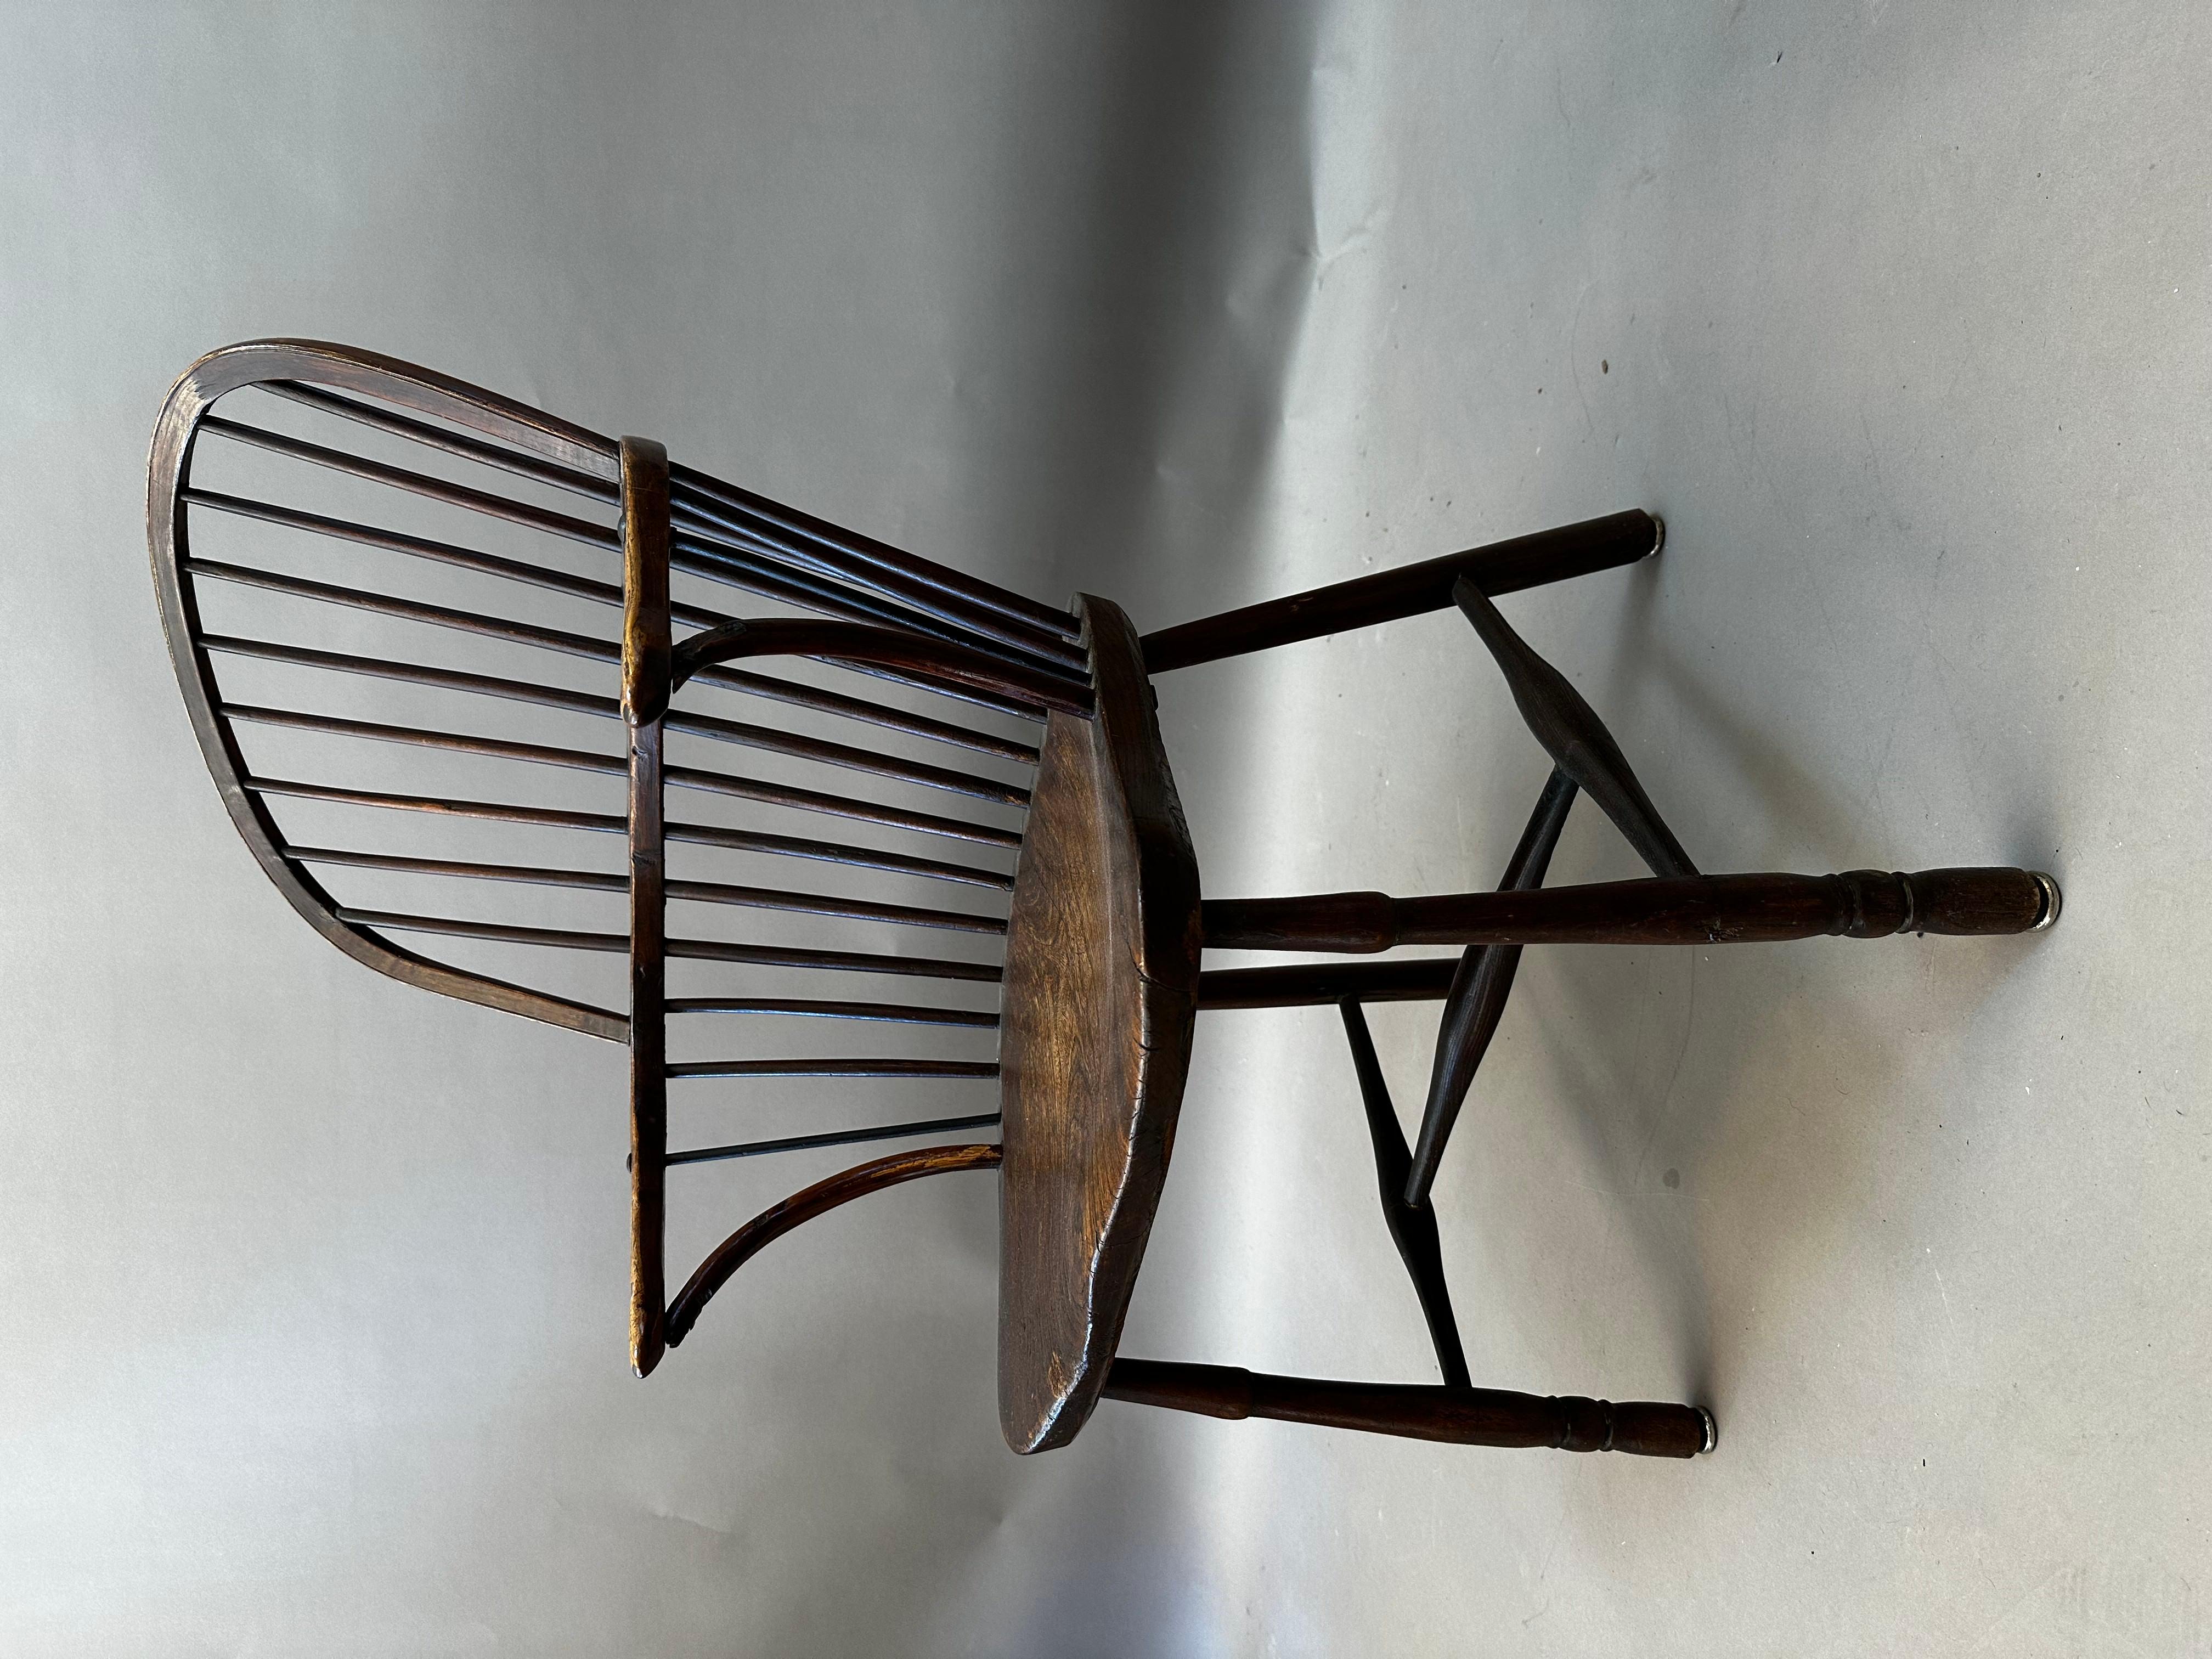 Englischer Windsor-Sessel des späten 18. Jahrhunderts.  Überwiegend aus Esche gefertigt, mit einem Sitz aus gemasertem Ulmenholz. Bügelrücken mit einfach gedrechselten Vorderbeinen und Streckern. Große ursprüngliche Farbe und glänzende Patina.